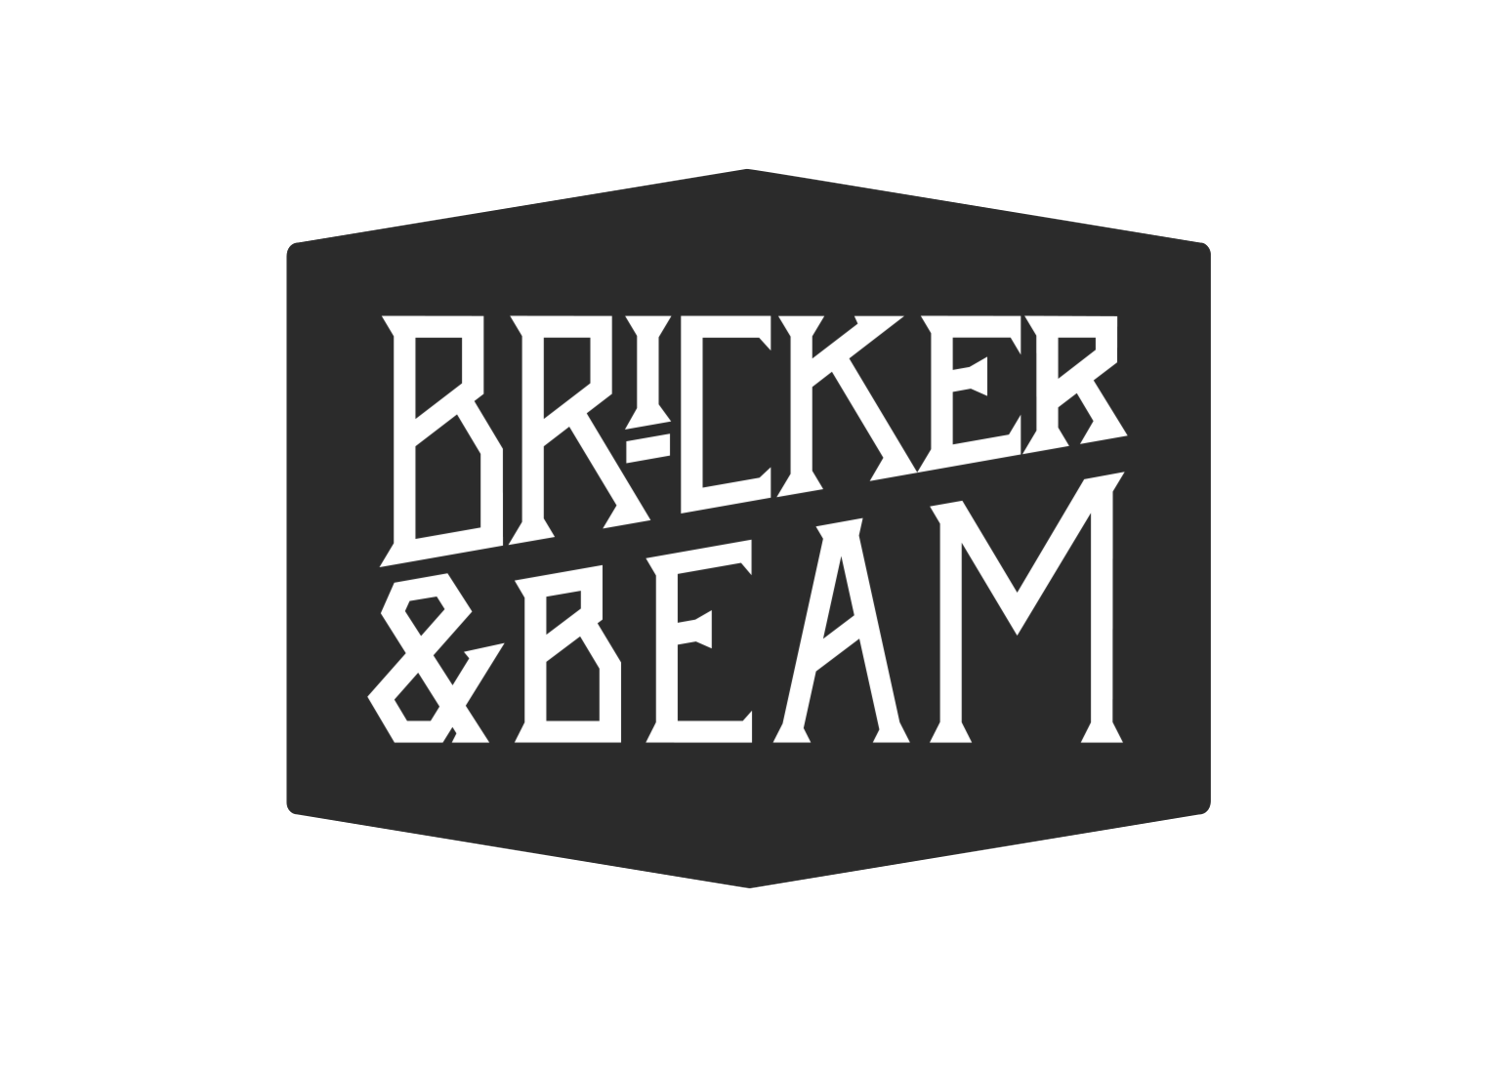 Bricker & Beam